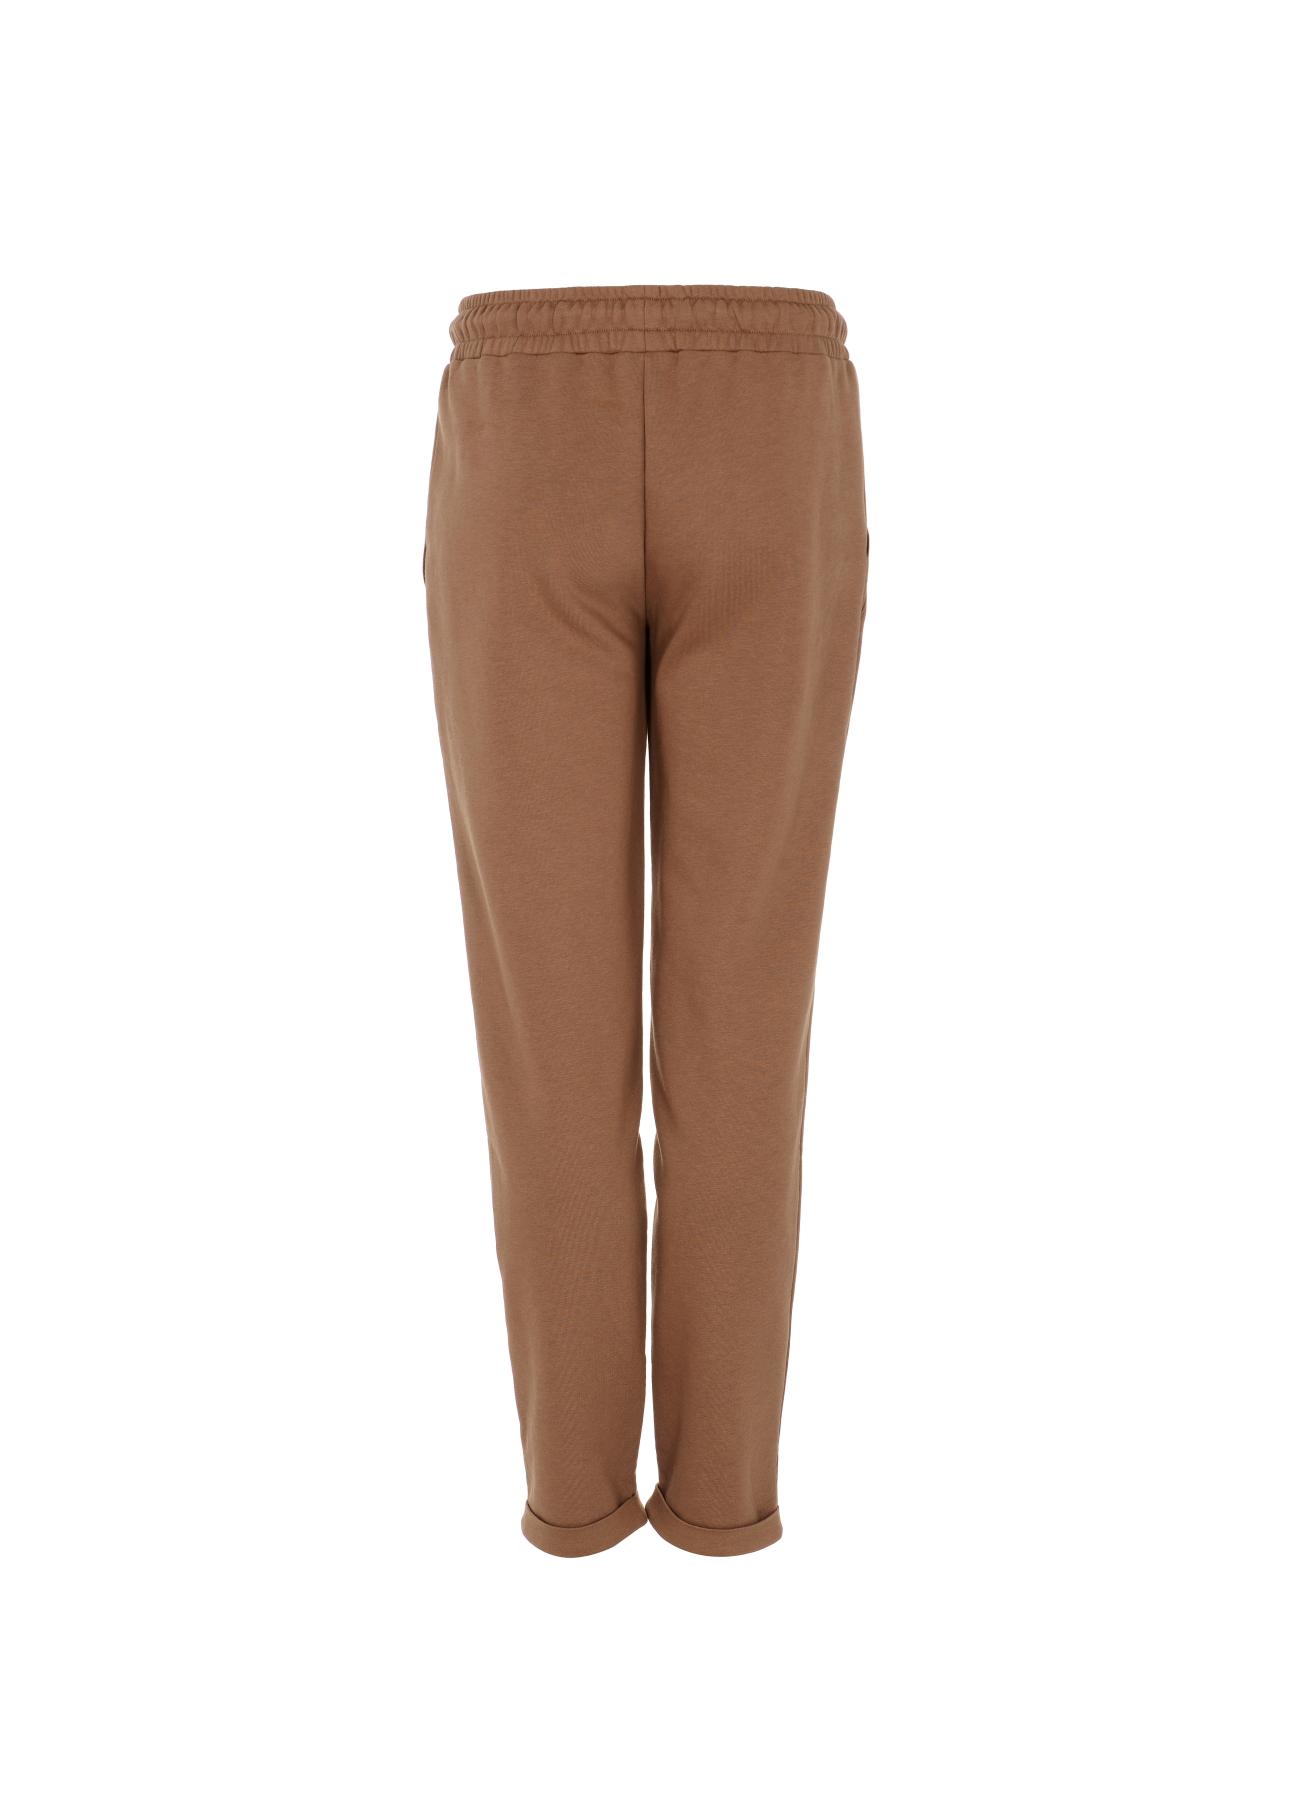 Brązowe spodnie dresowe damskie SPODT-0065-81(Z22)